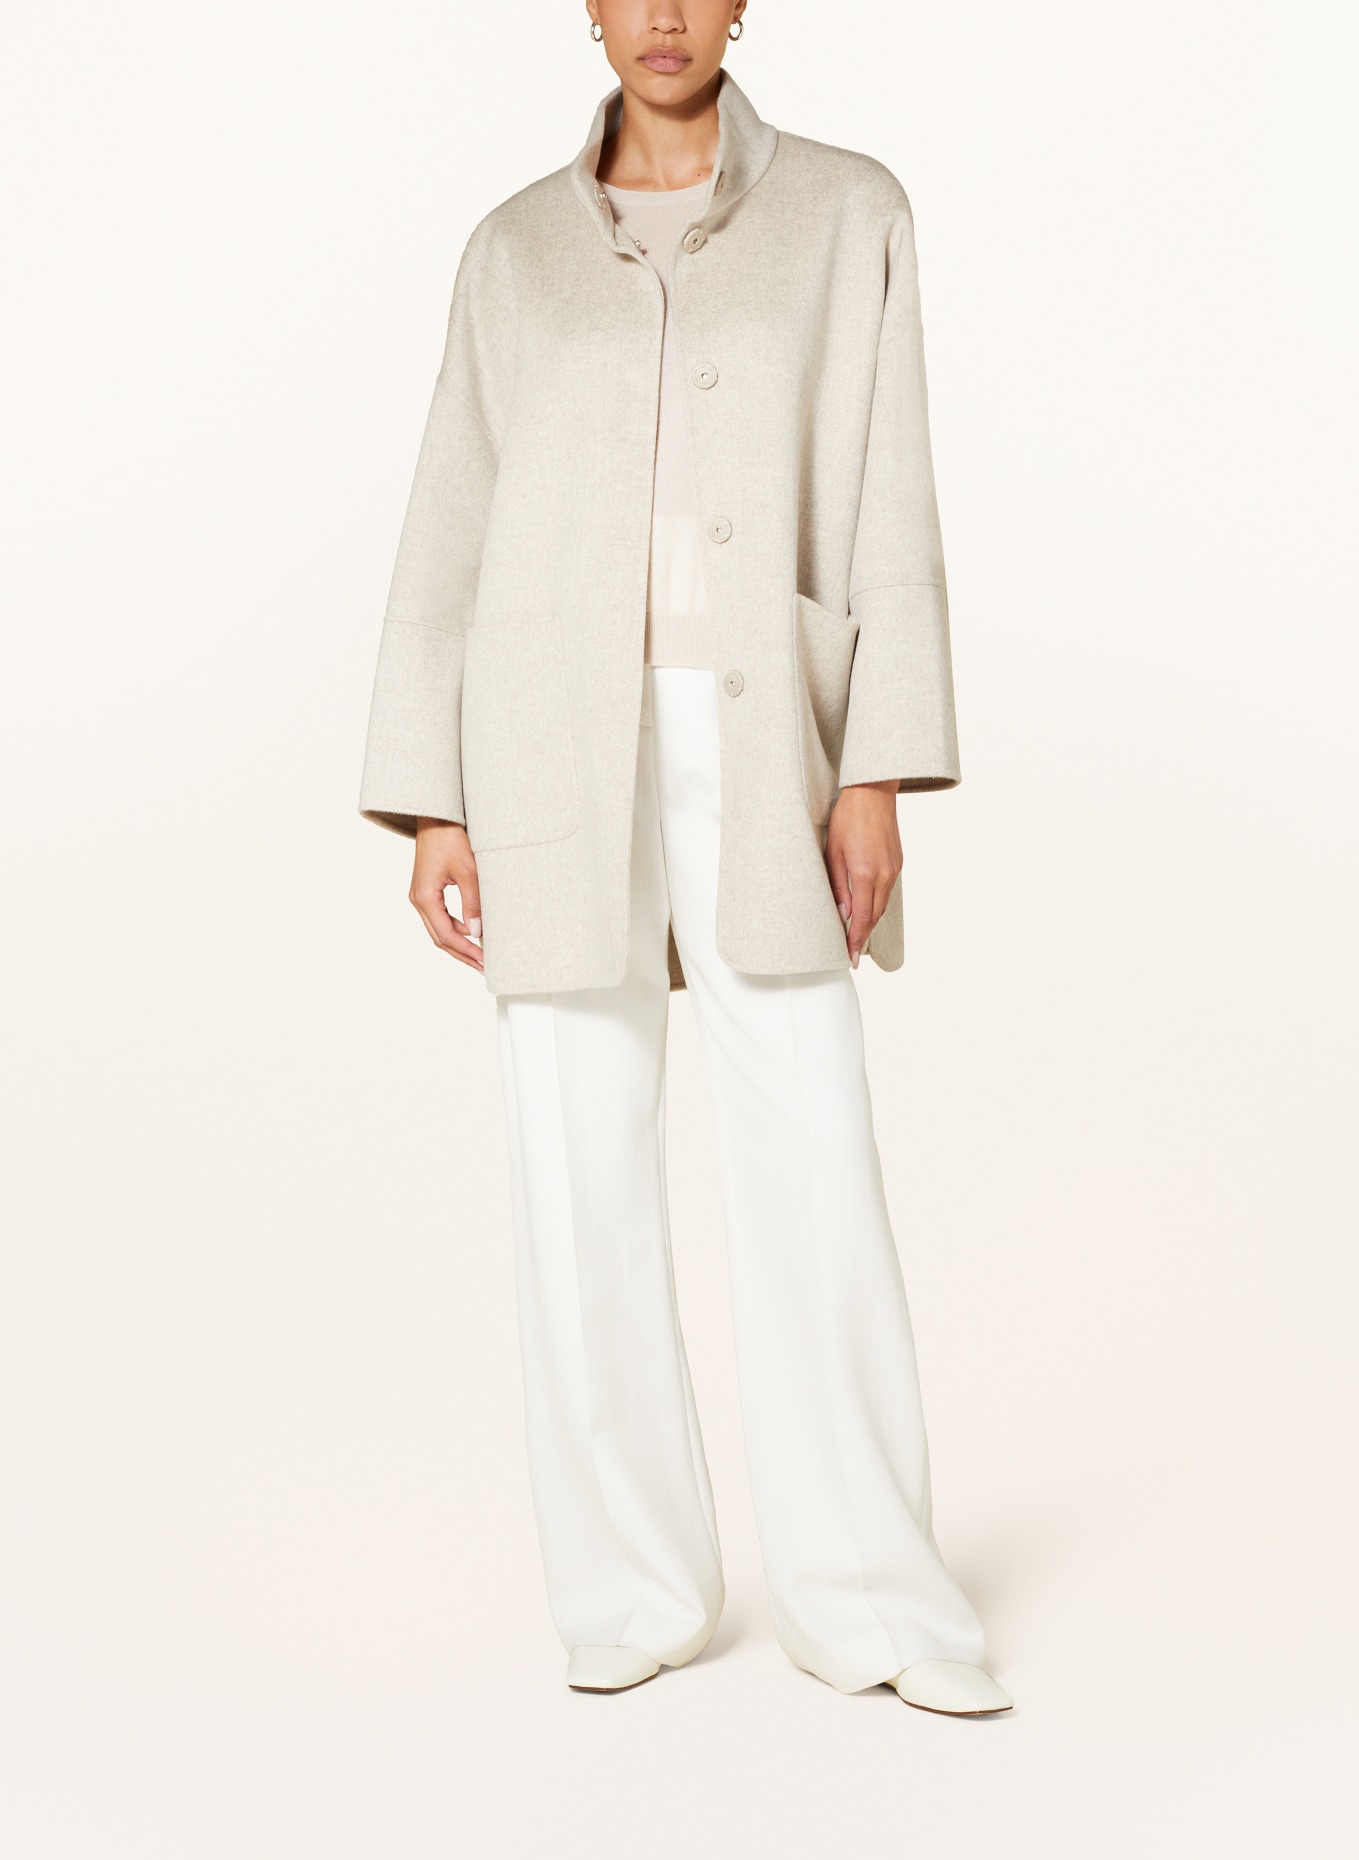 IRIS von ARNIM Jacket HORTENSIA with cashmere, Color: ECRU/ GRAY (Image 2)